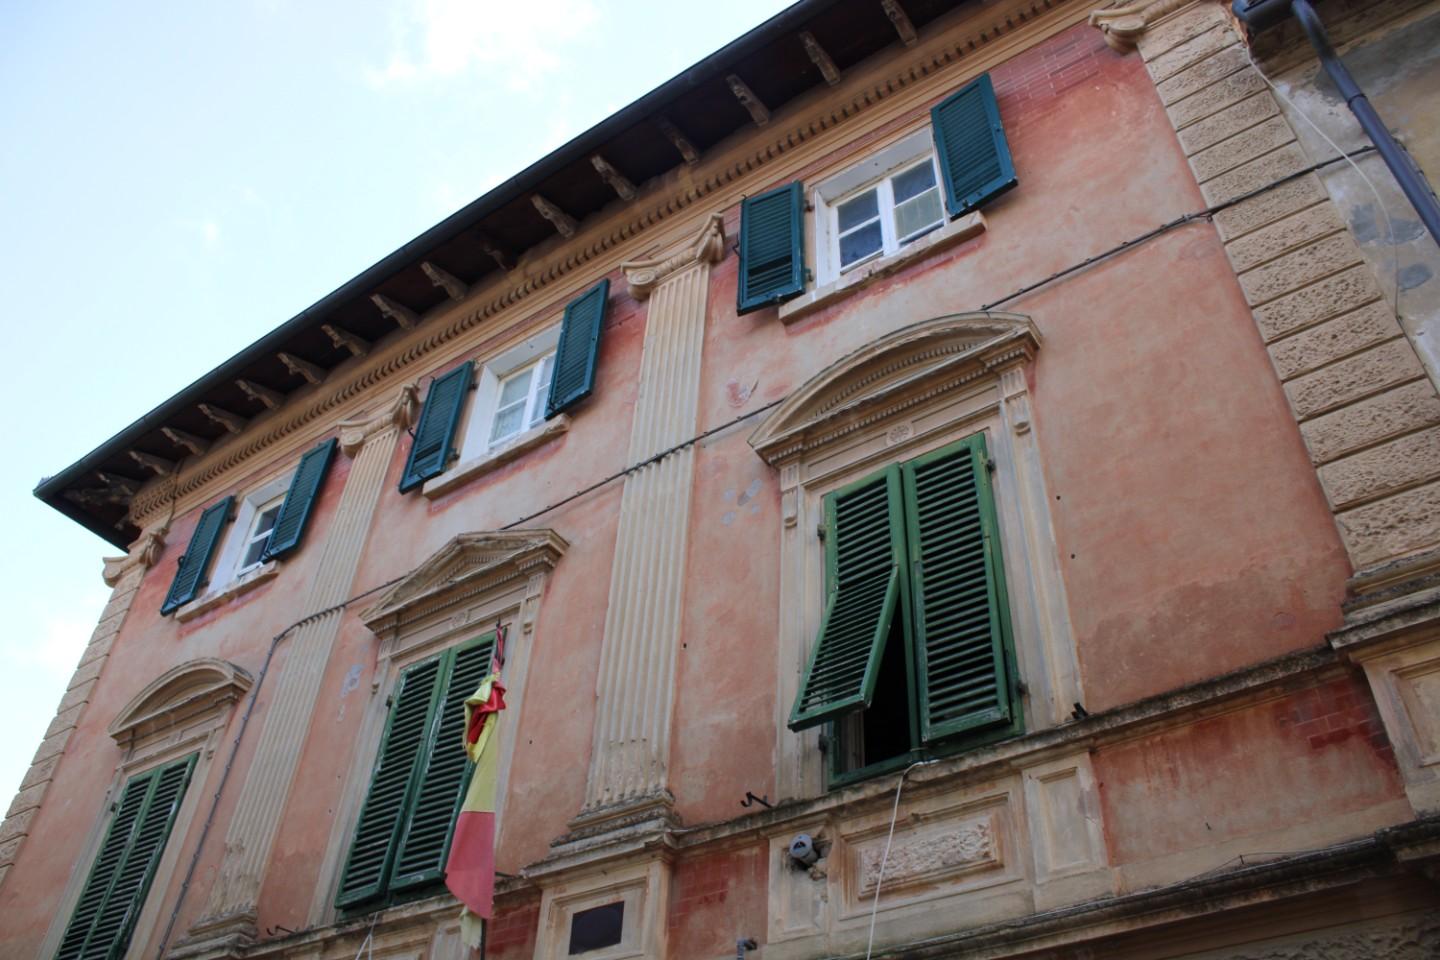 Edificio storico a Casciana Terme Lari